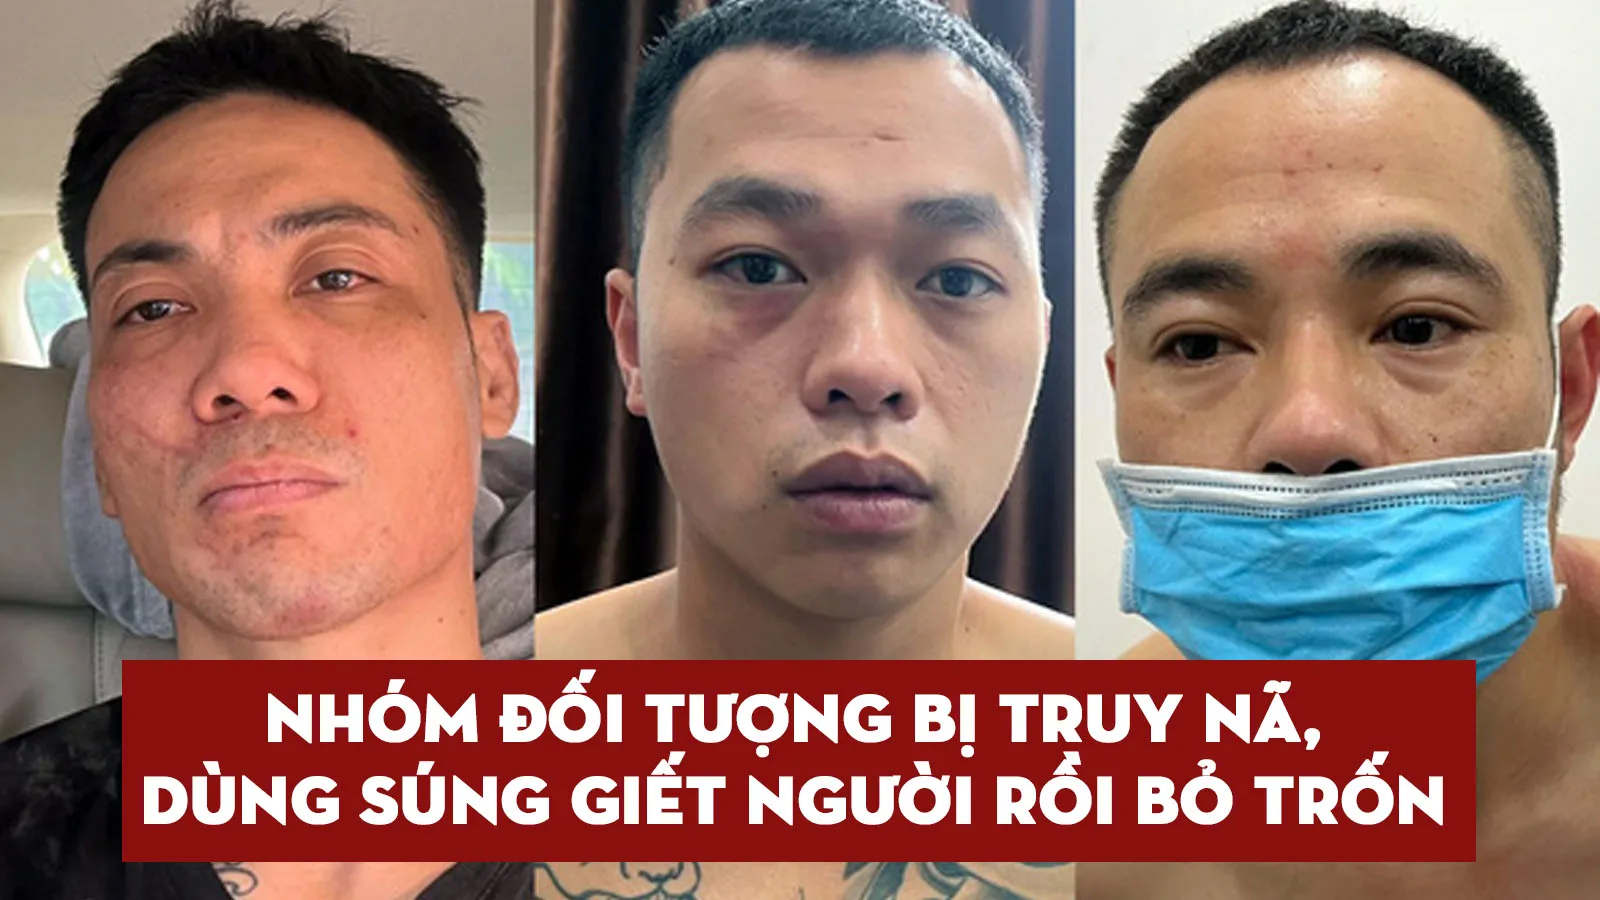 Tin nhanh sáng 4/5: Bắt băng nhóm đặc biệt nguy hiểm, gây án ở Yên Bái trốn vào Biên Hòa